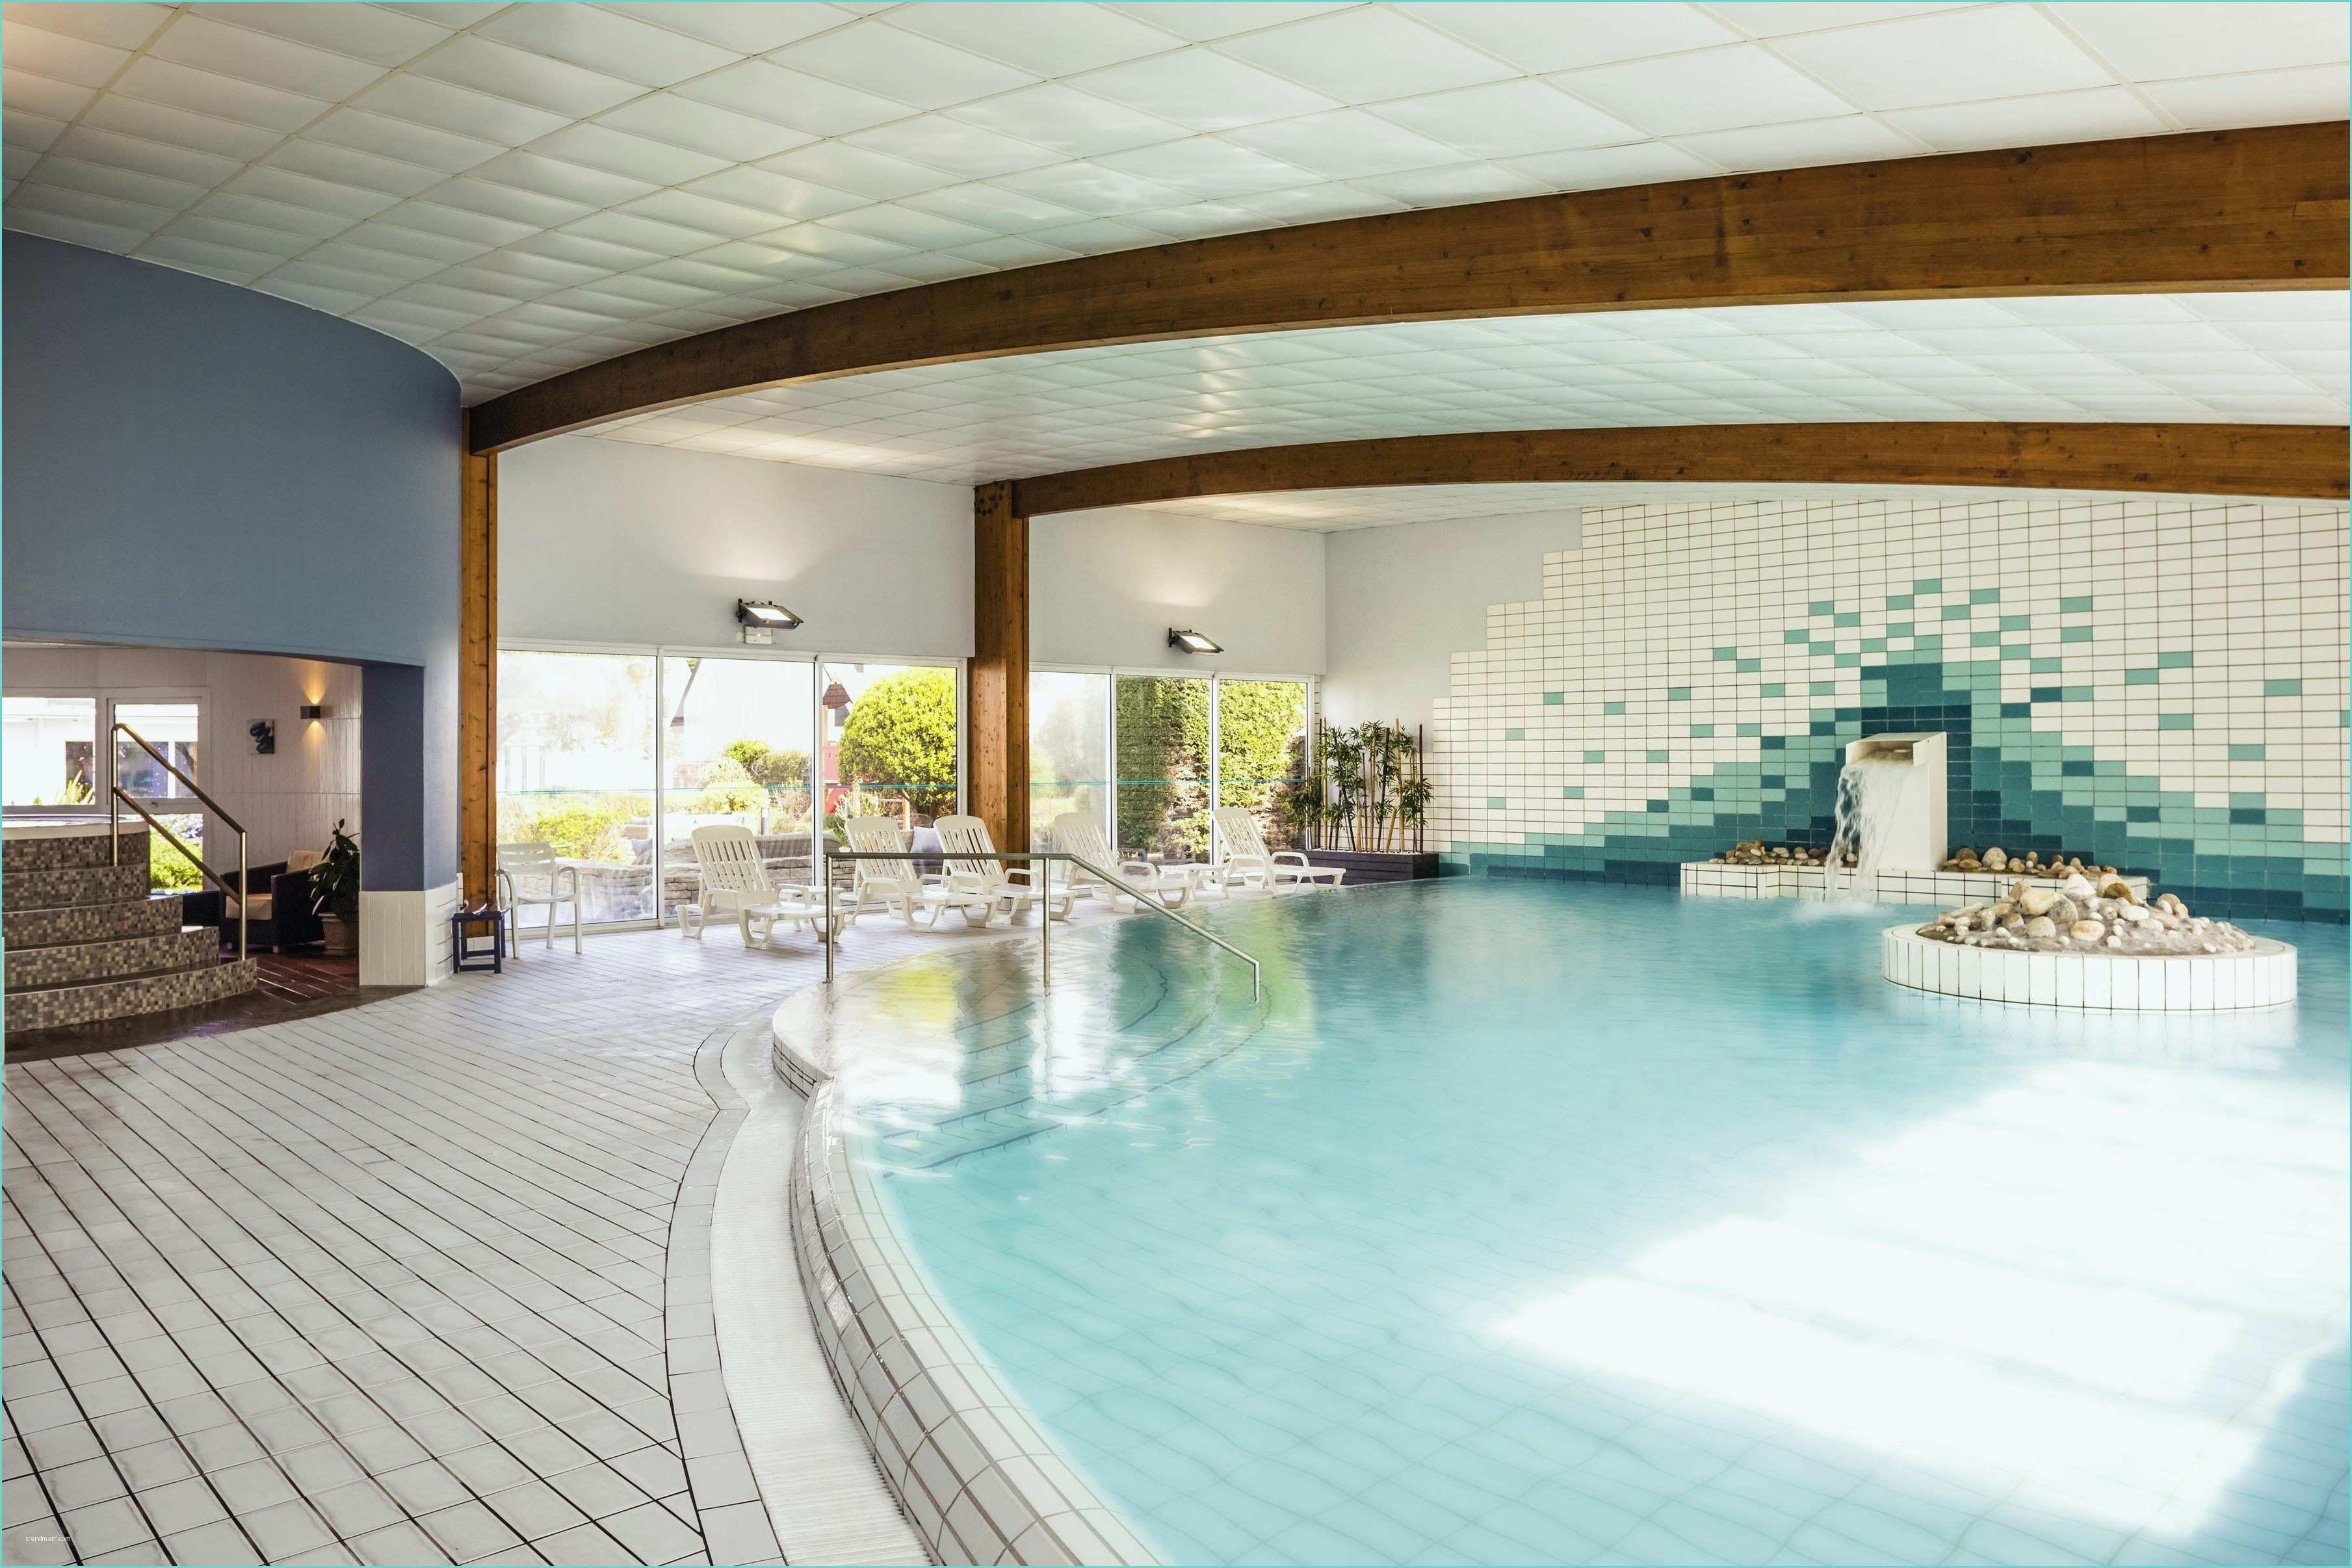 Meilleures offres de l'hôtel Foret Noire avec piscine pas cher